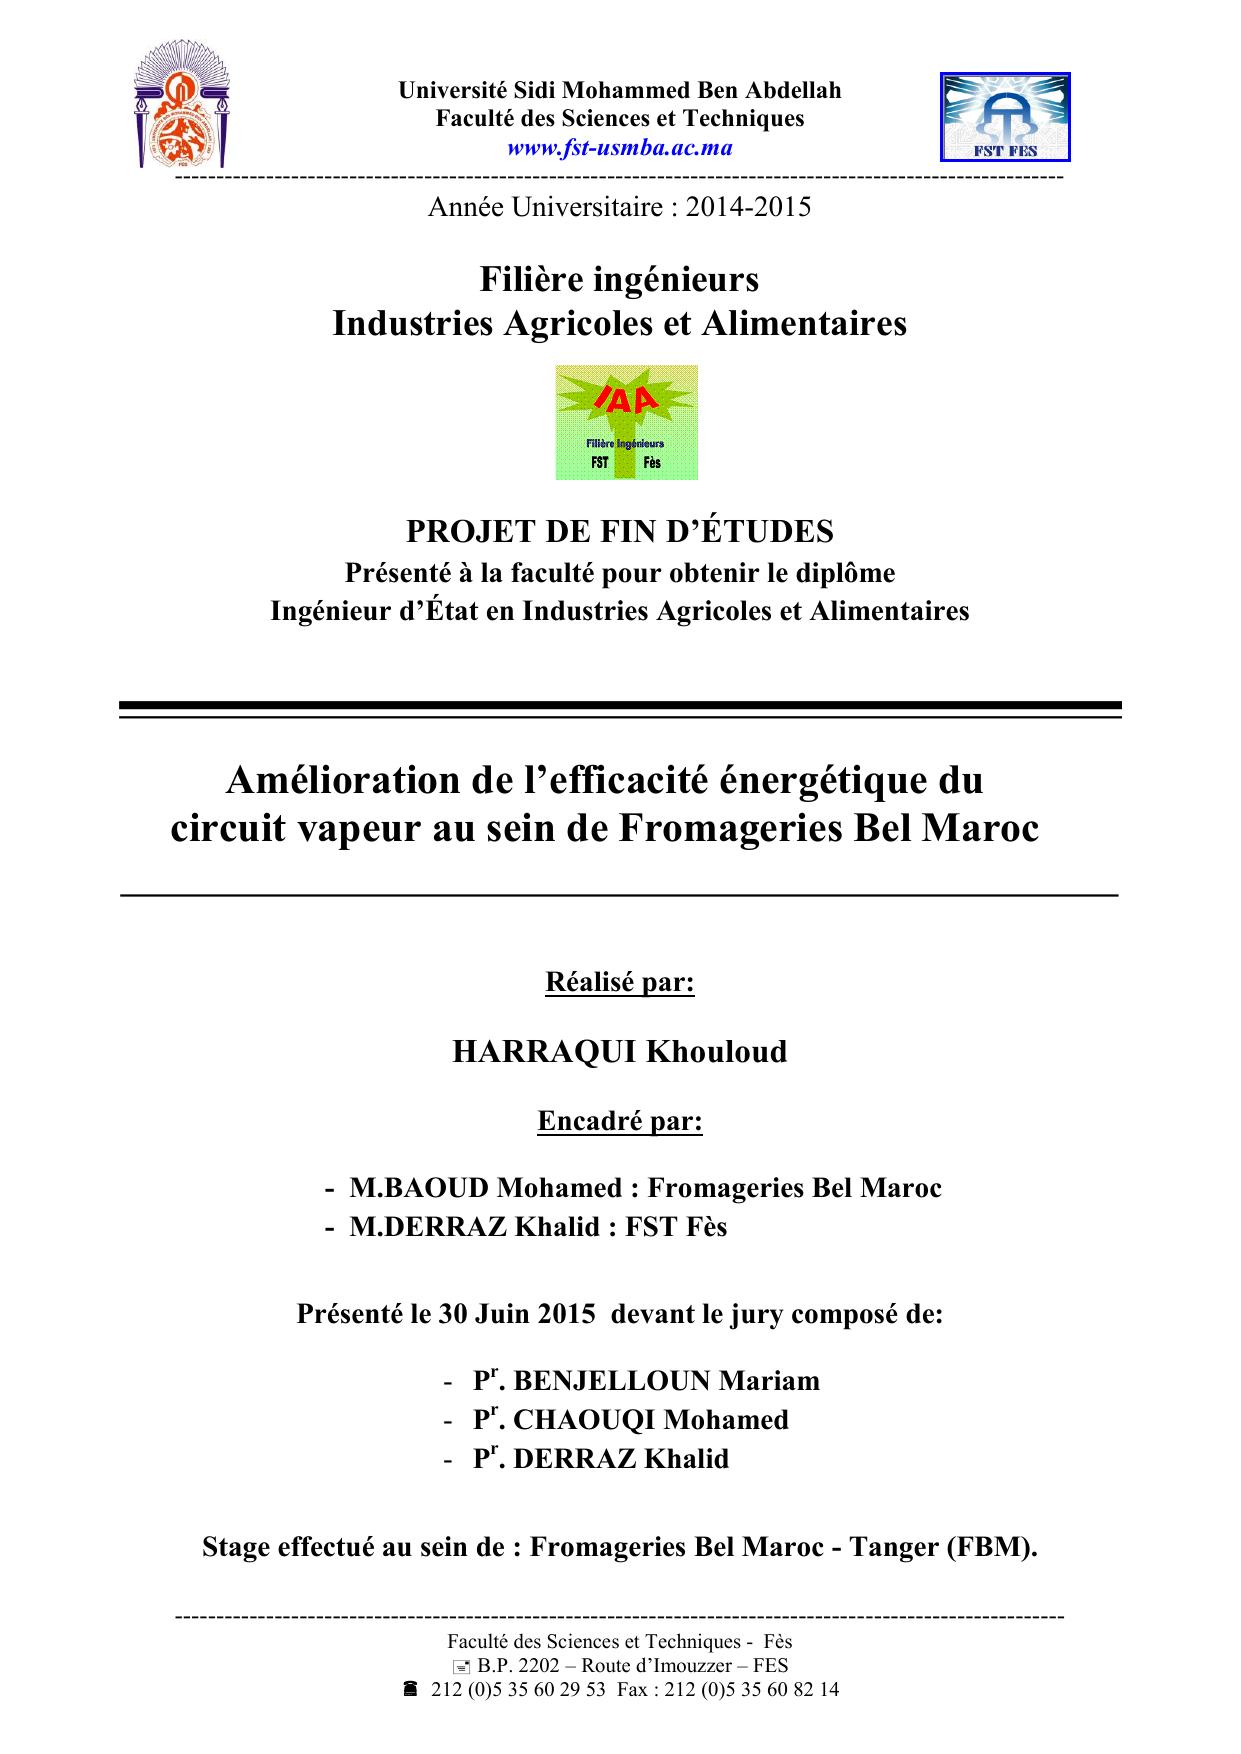 Amélioration de l’efficacité énergétique du circuit vapeur au sein de Fromageries Bel Maroc